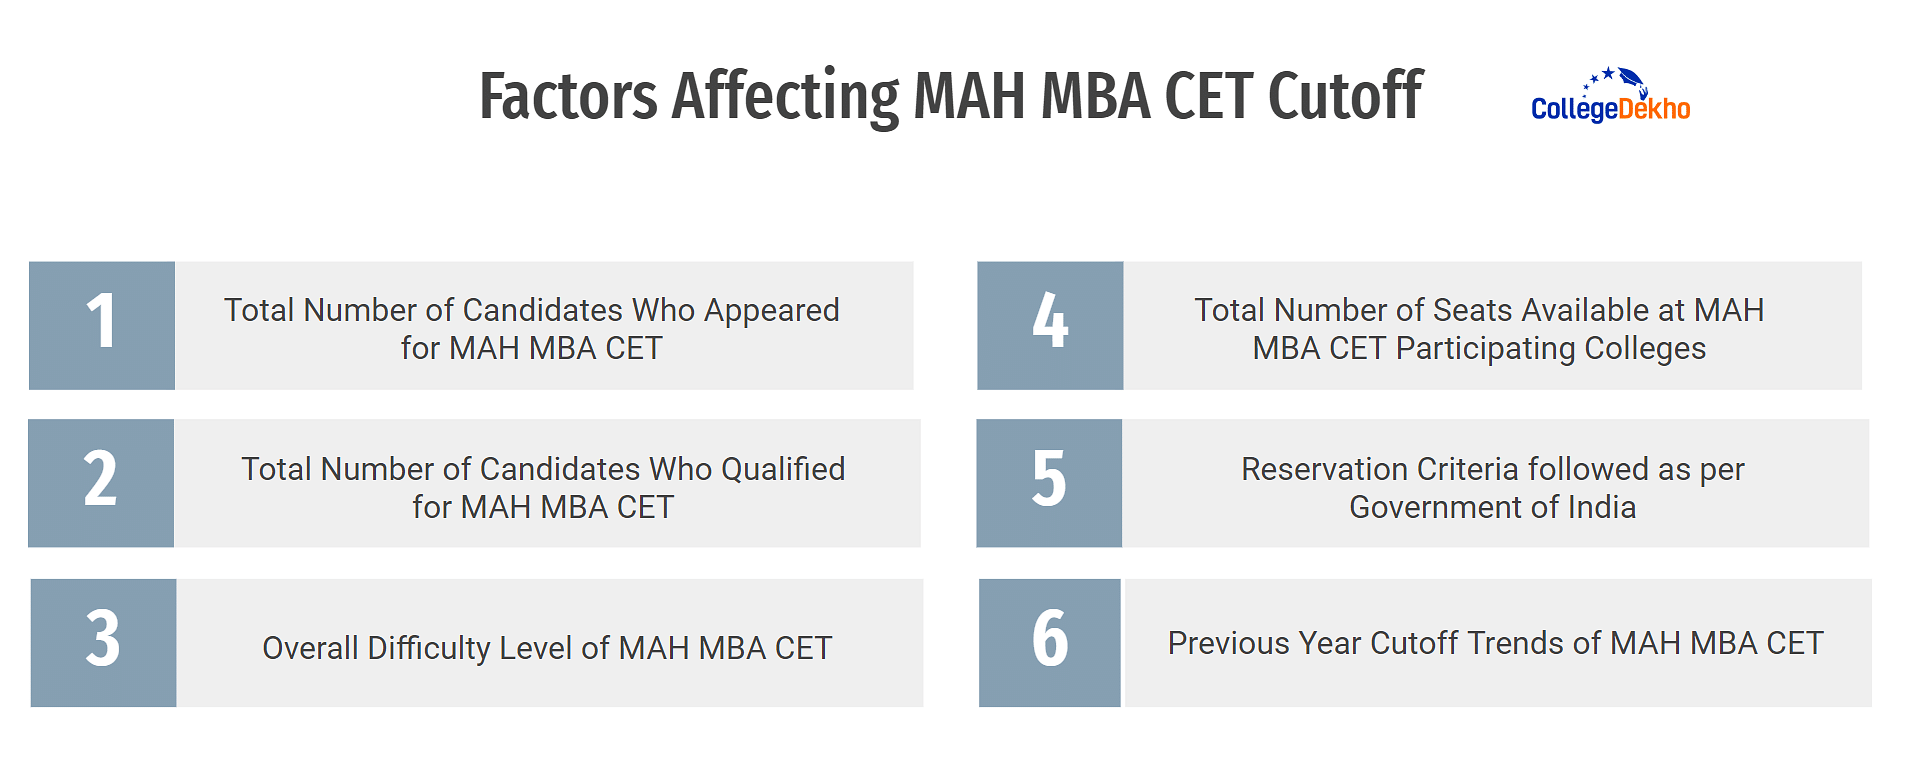 Factors Affecting MAH MBA CET Cutoff